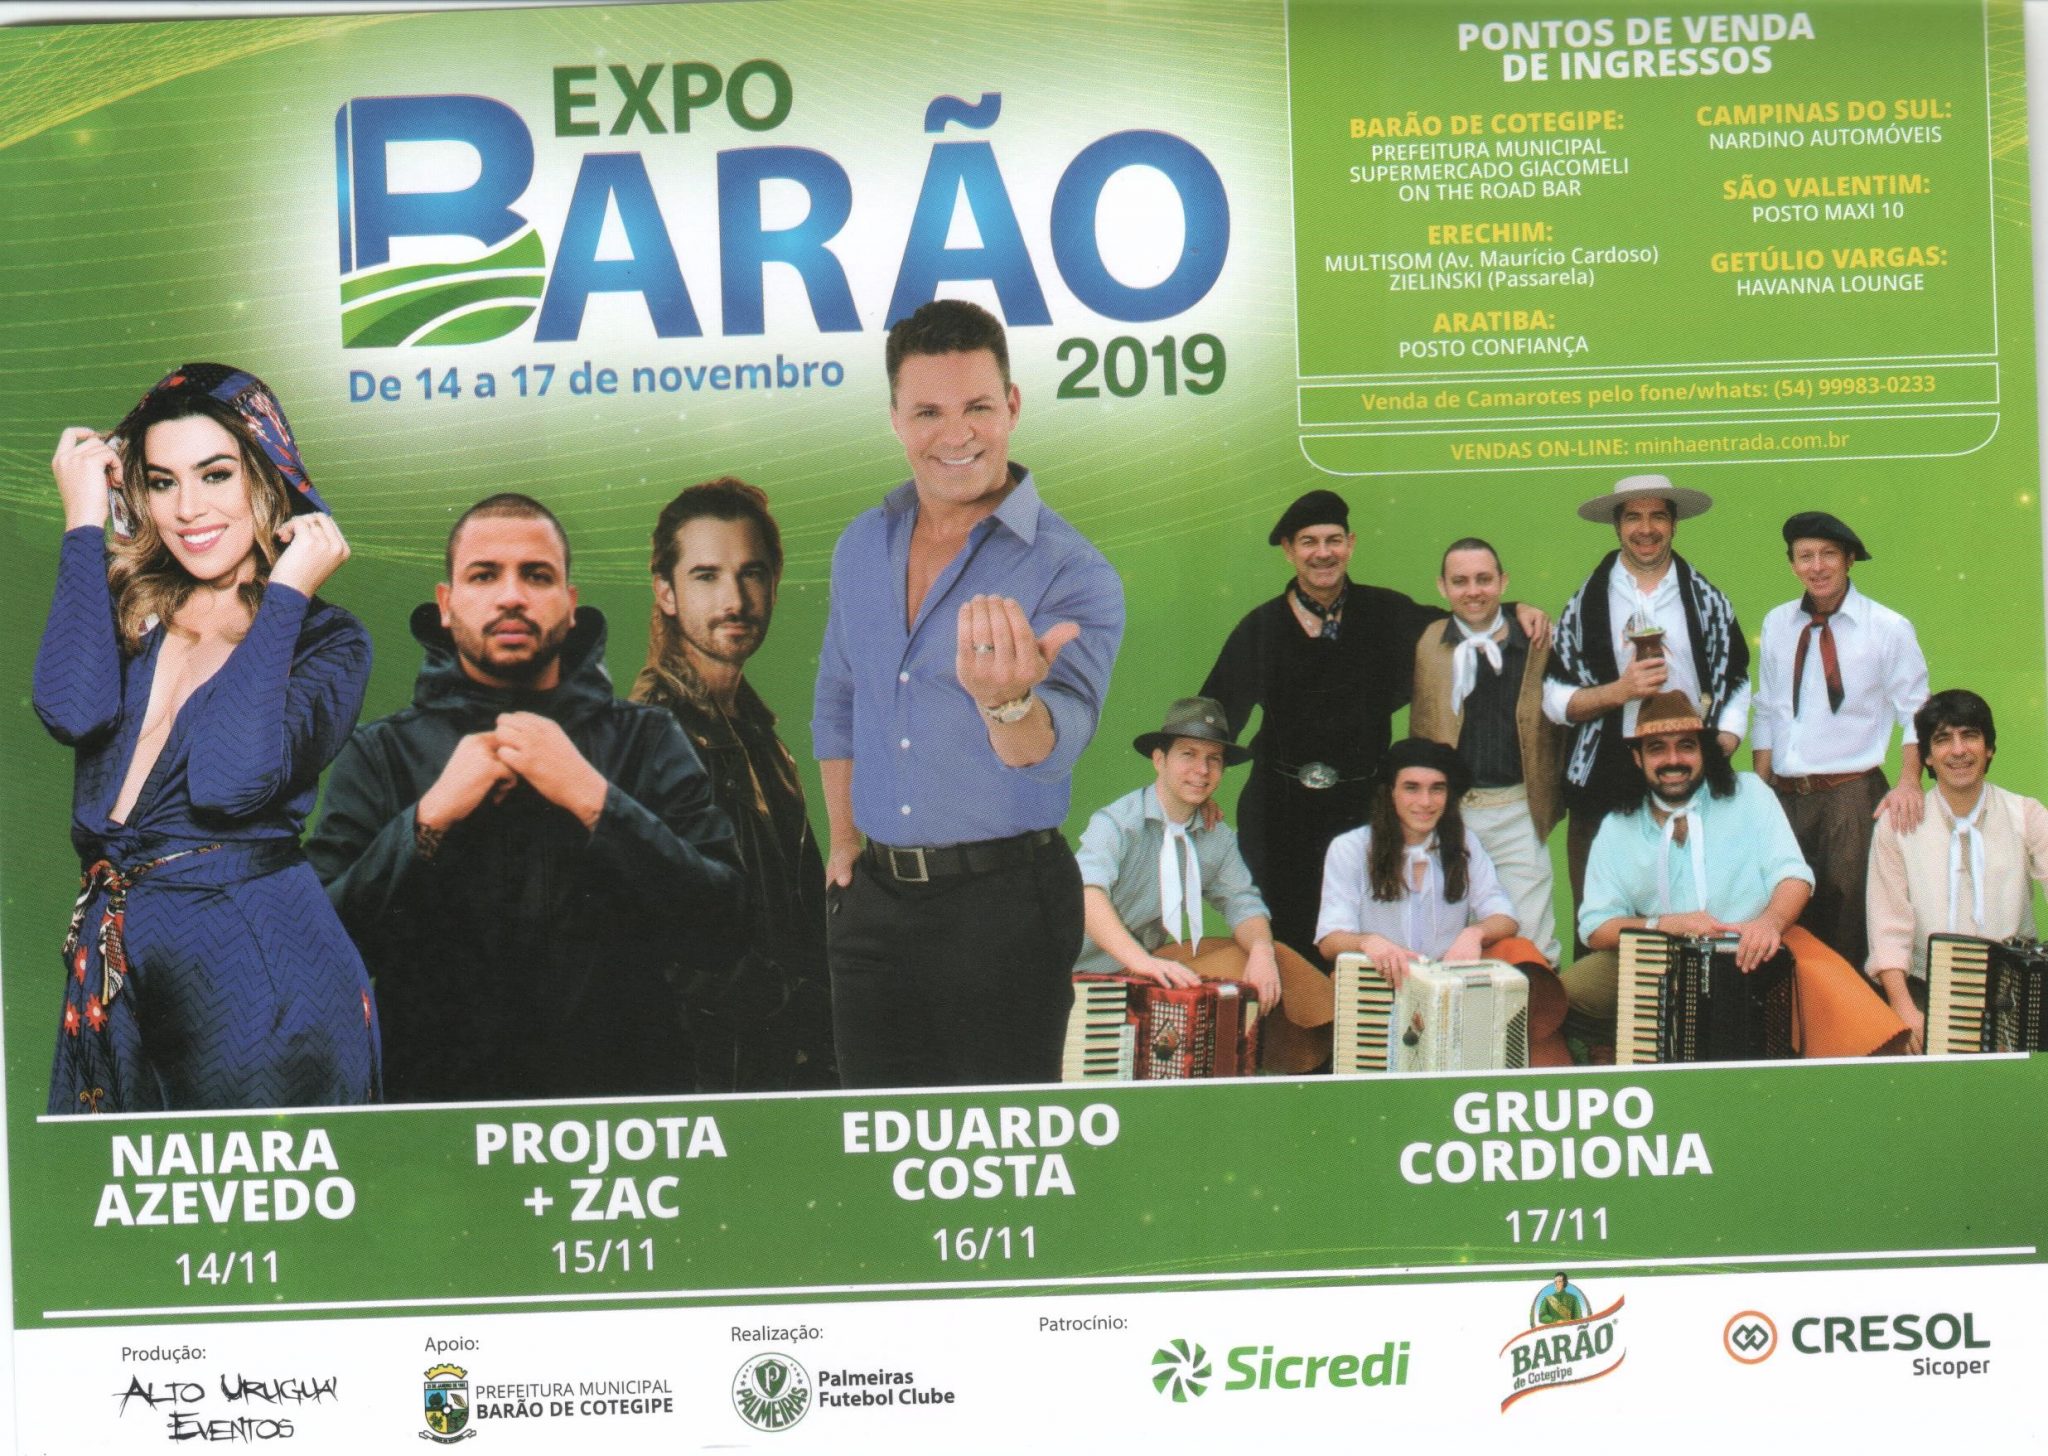 Você está visualizando atualmente EXPO BARÃO 2019